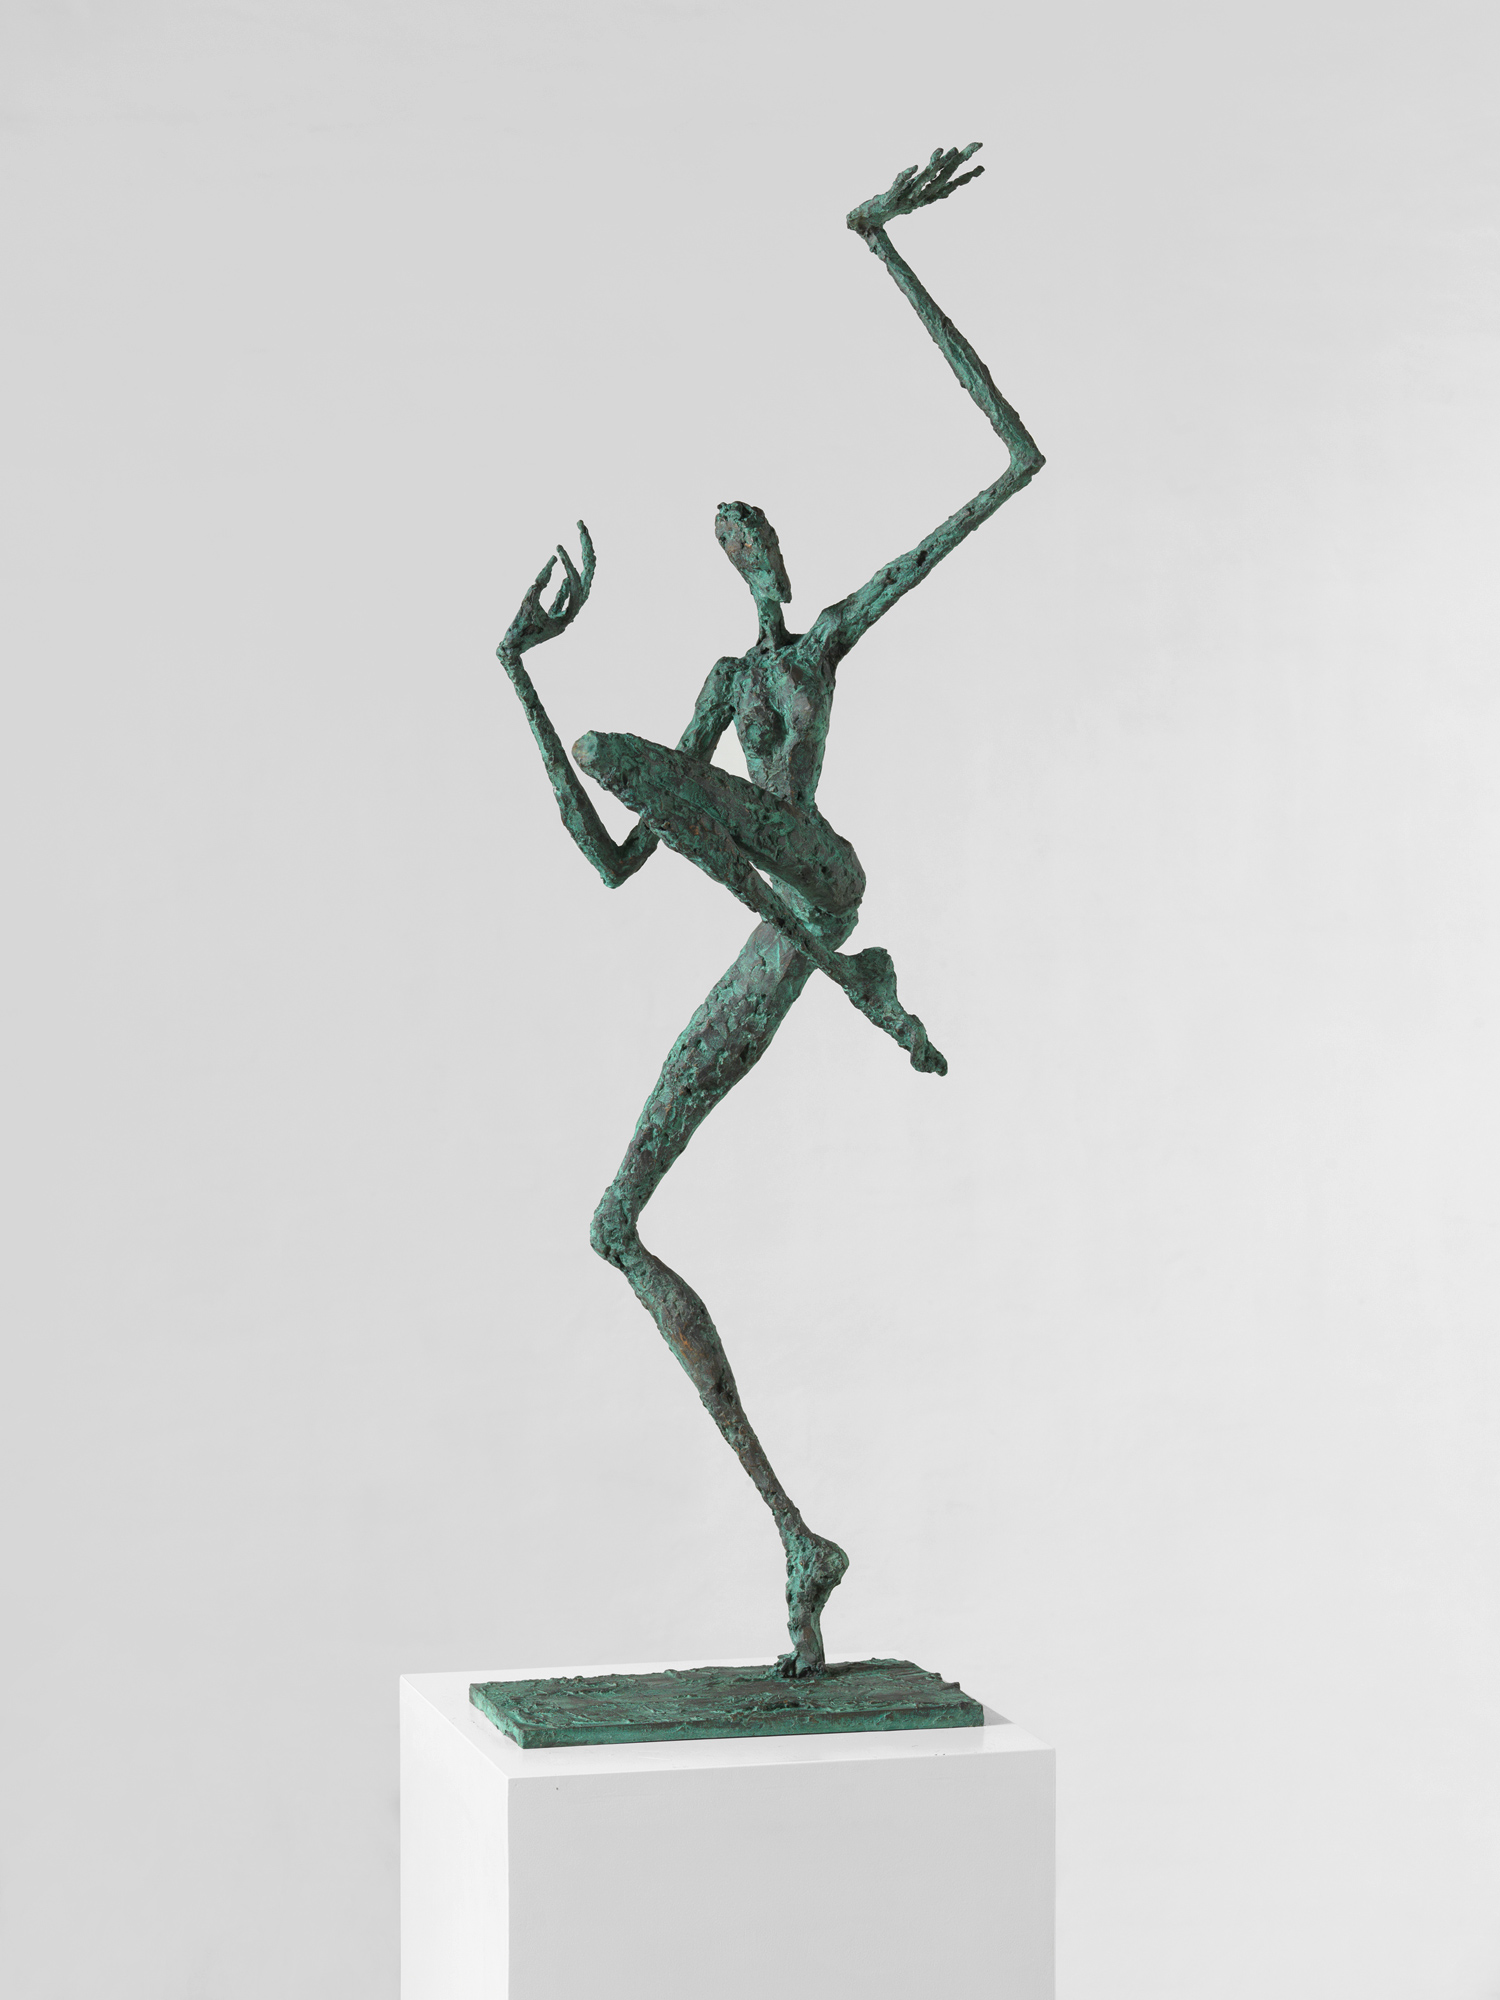 Take it, 2013–2017, Bronze, 116 x 45 x 55 cm